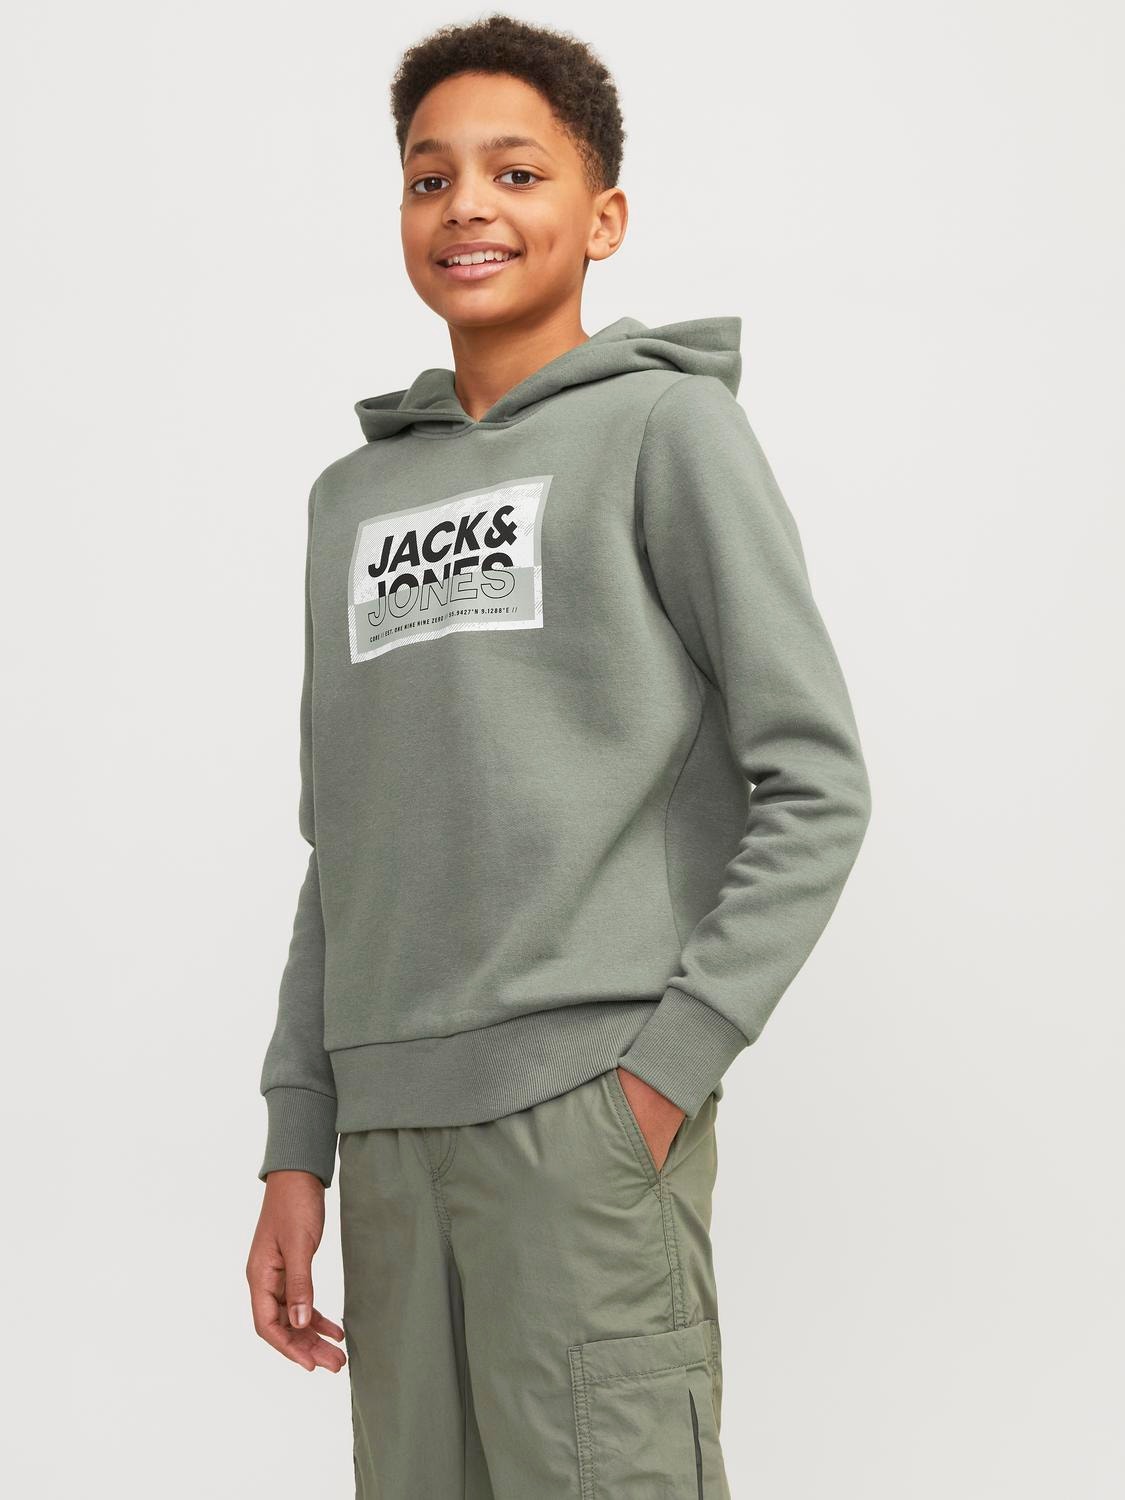 Jack & Jones Printed Hoodie For boys -Agave Green - 12254120